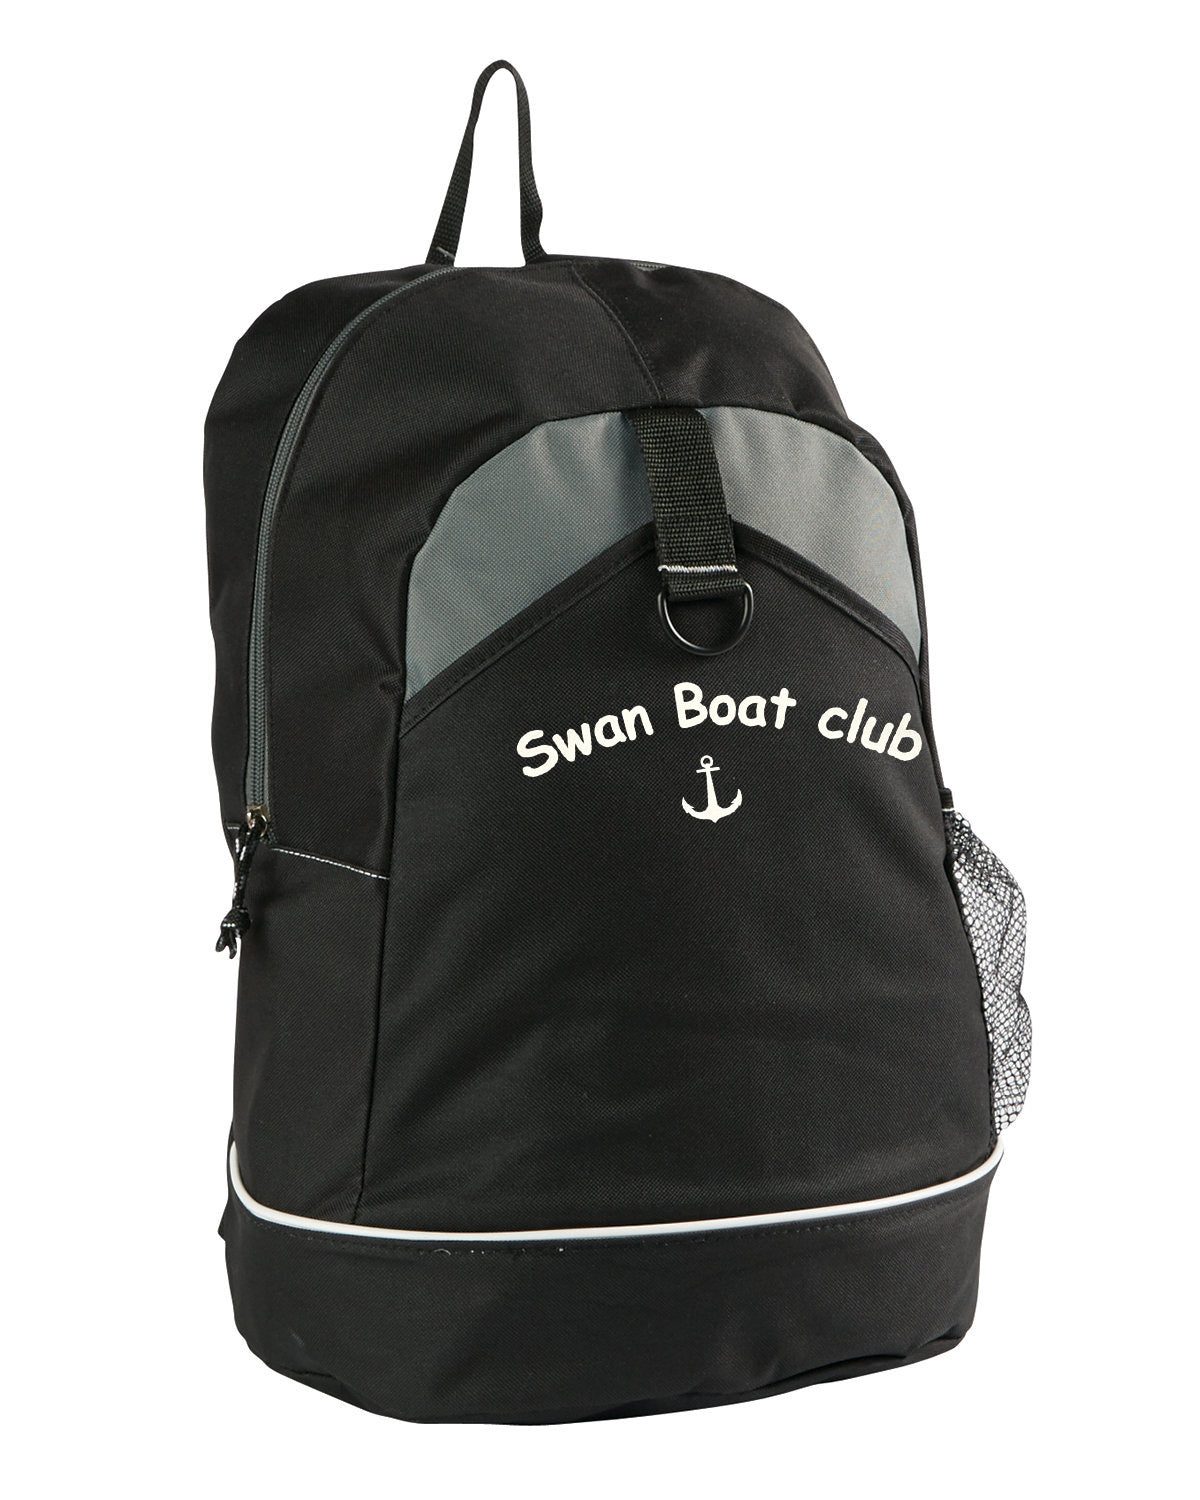 Swan Boat Club Backpack